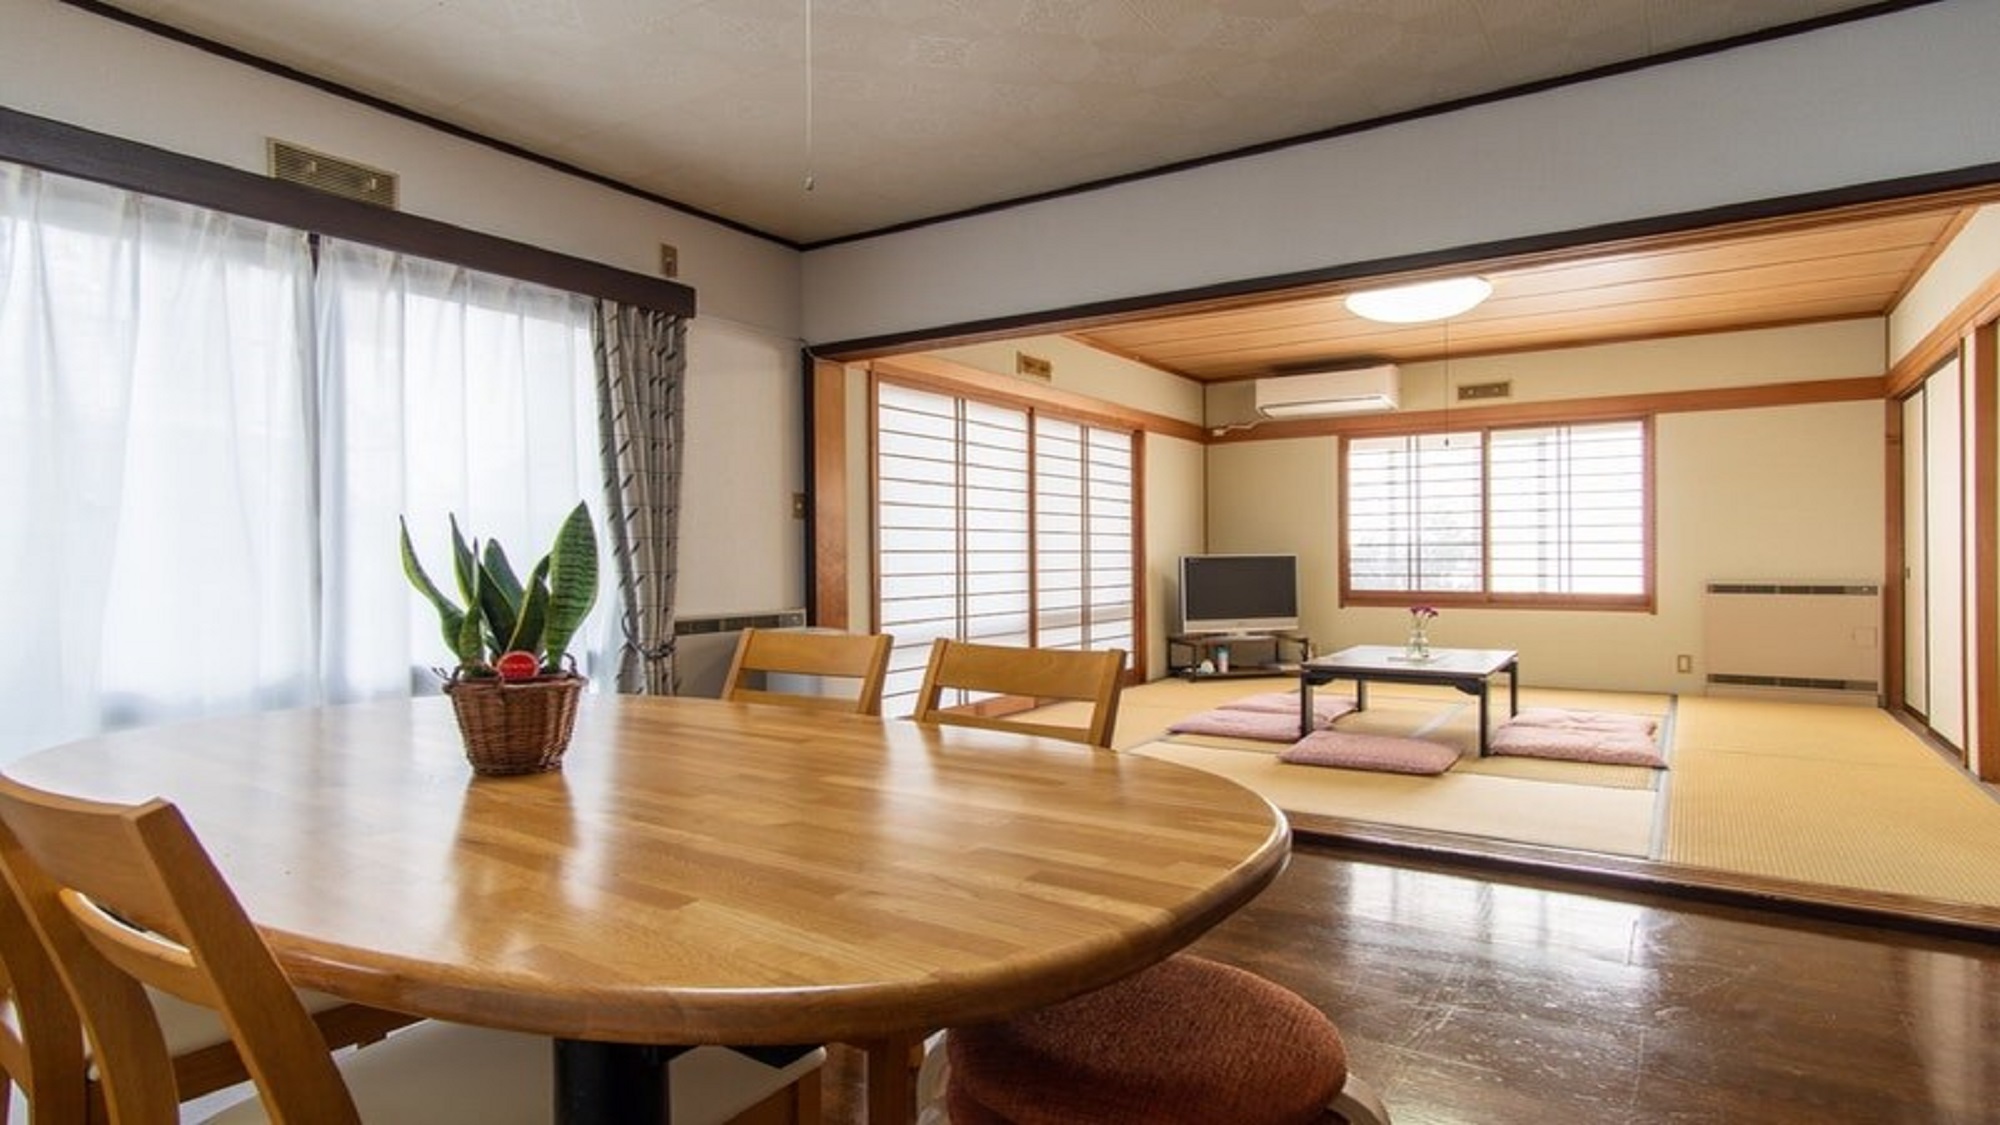 一戸建貸切の宿、富士吉田市中心地、レトロな街並みが楽しめる。【Vacation STAY提供】 image